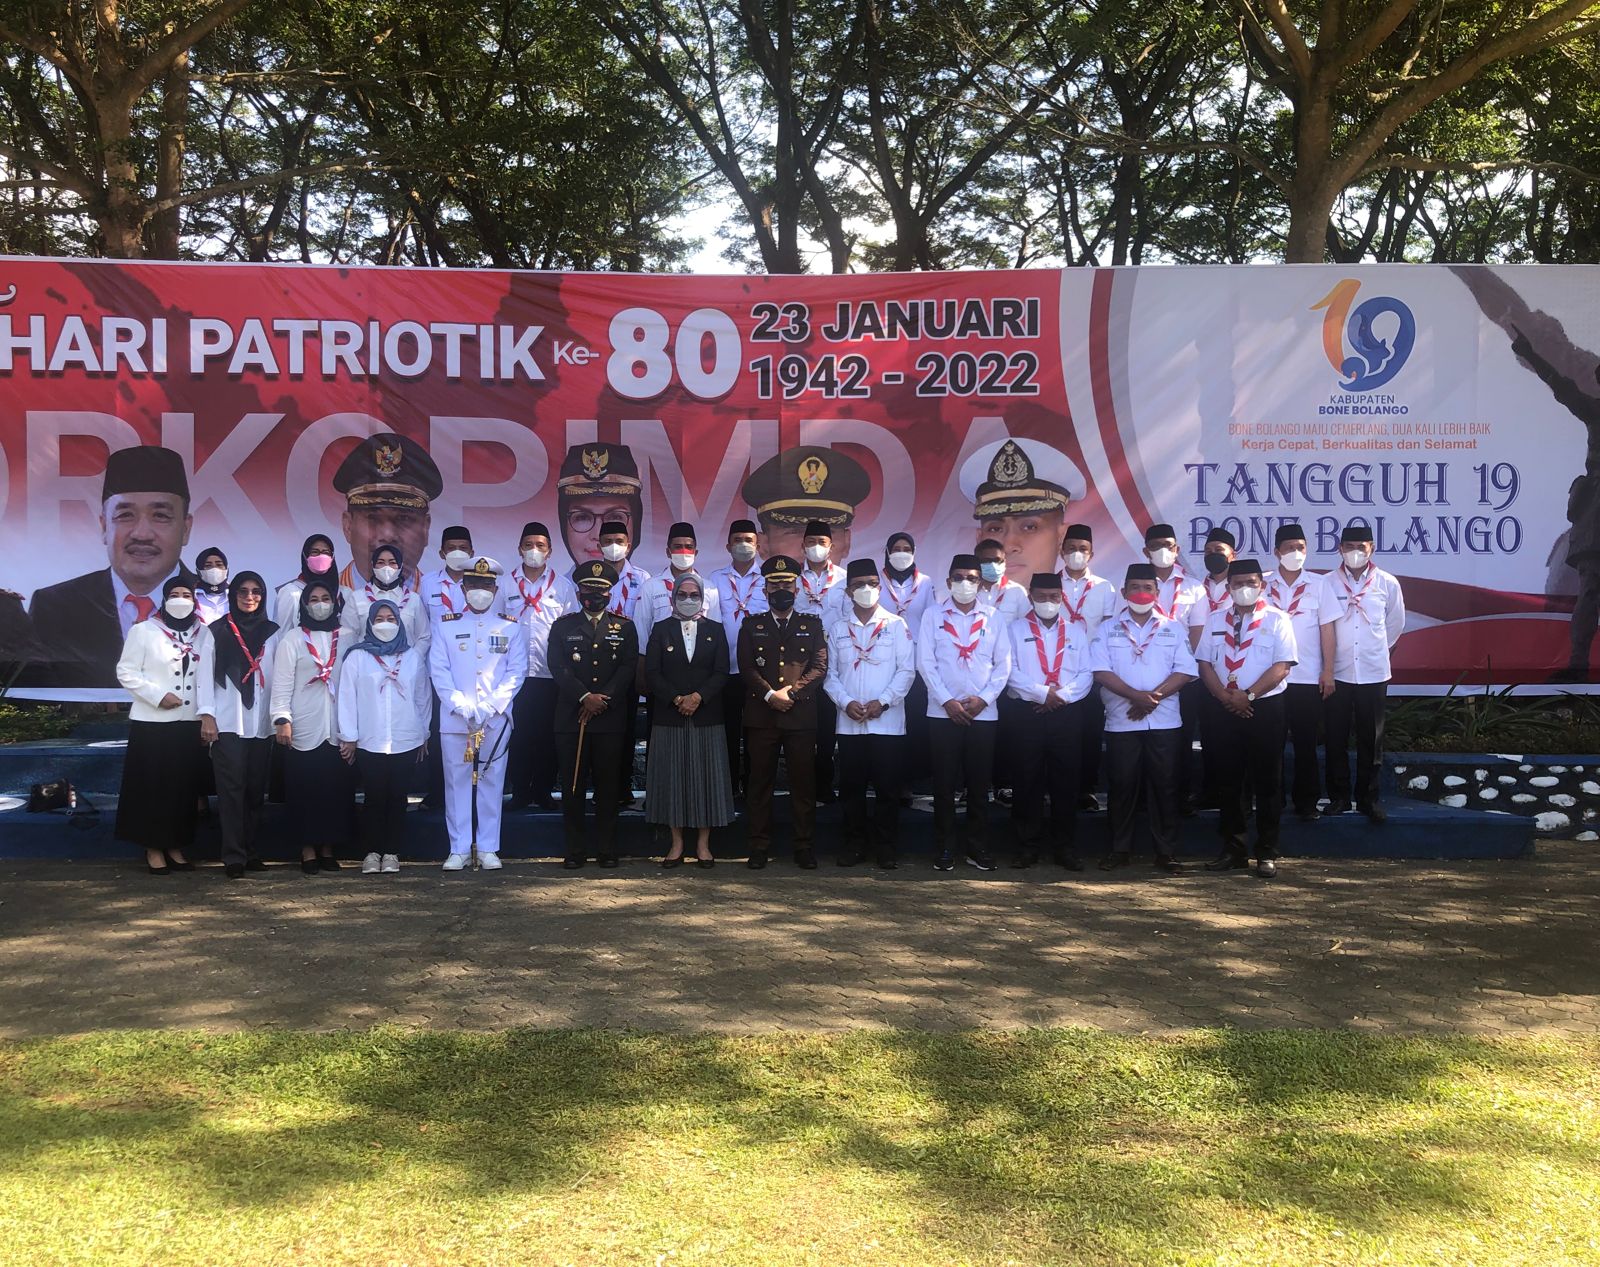 Patriotik 23 Januari, Merlan Ajak Generasi Muda Bangun Bone Bolango